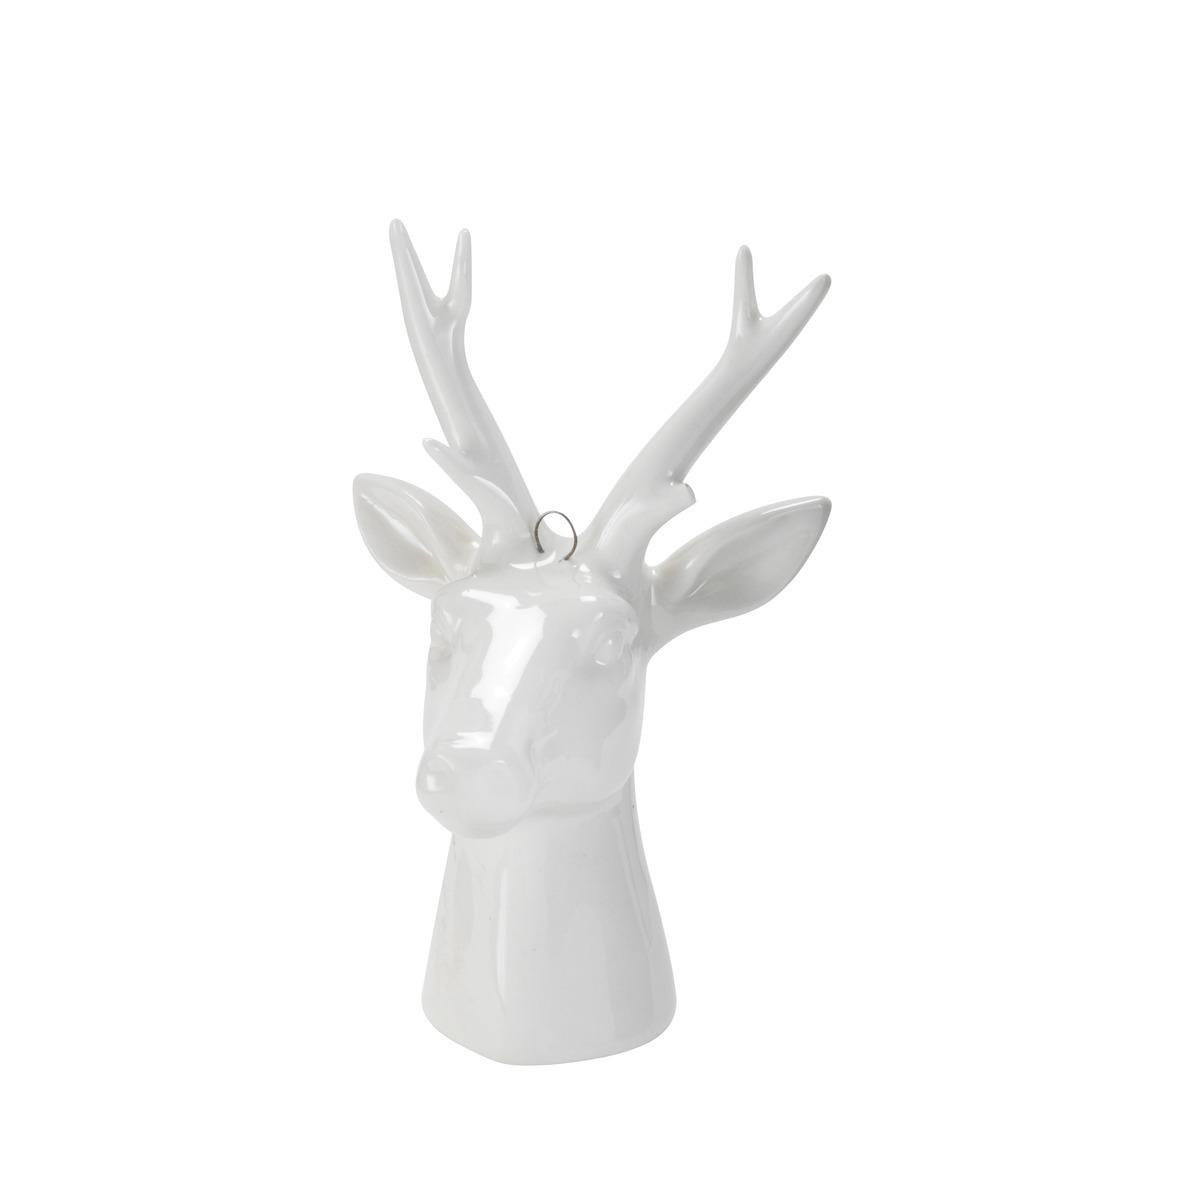 Suspension en porcelaine - 7,5 x 7,2 x 12 cm - Modèle cerf ou renne - Blanc